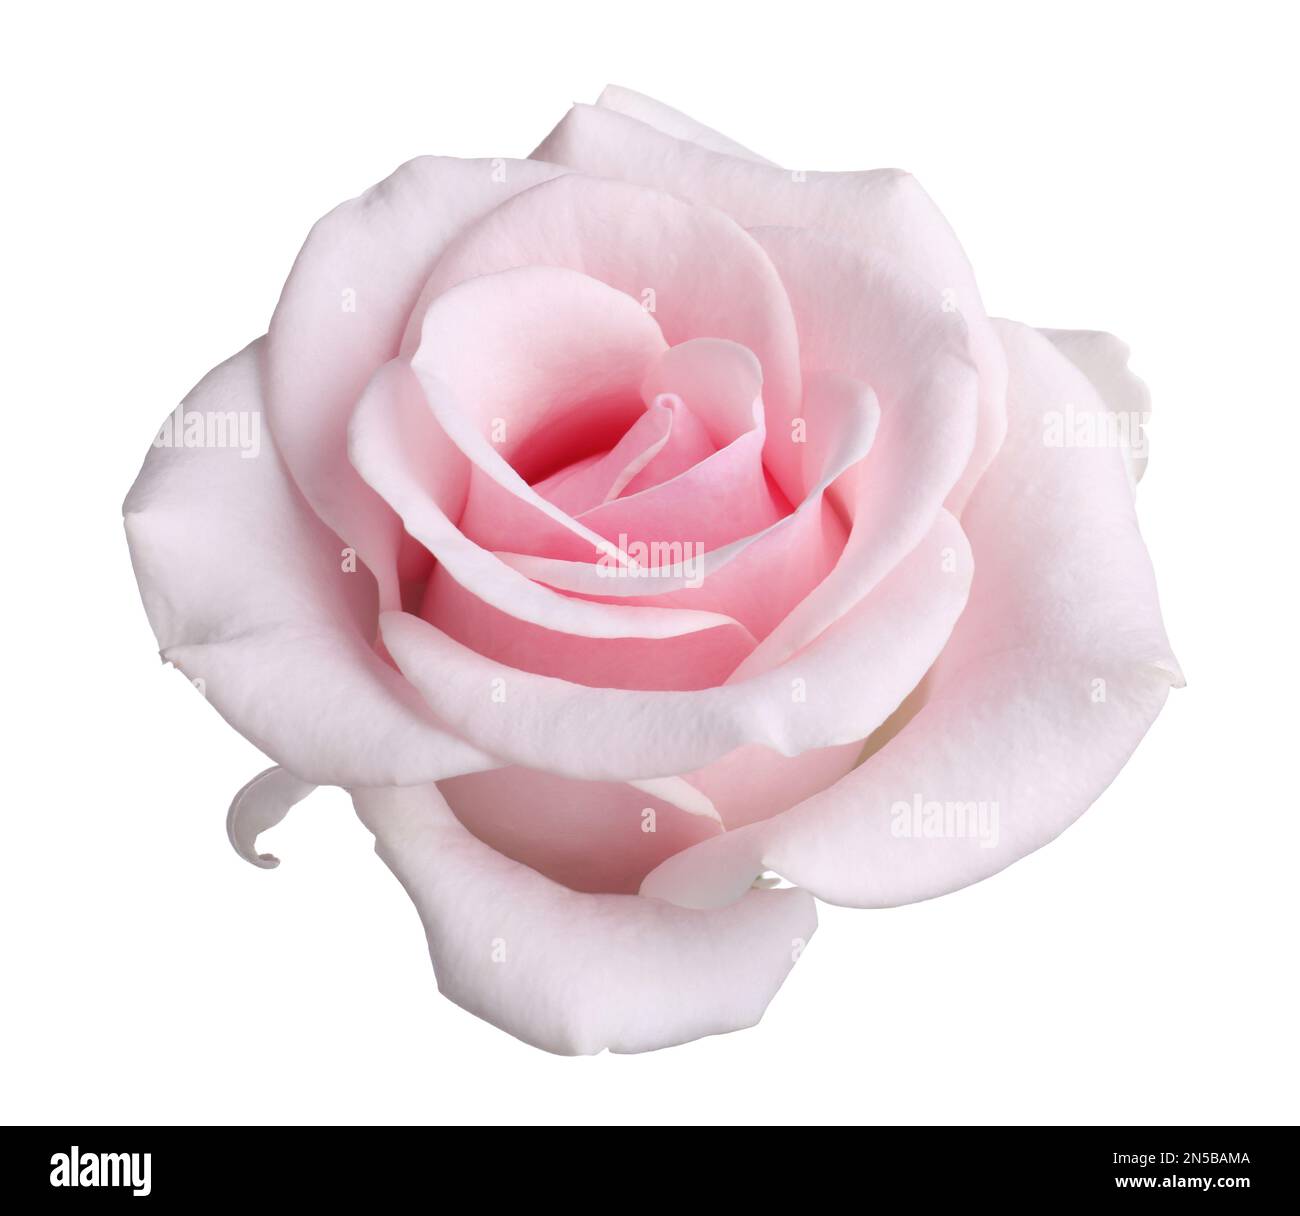 Perfetto fiore di rosa bianca Immagini senza sfondo e Foto Stock ritagliate  - Pagina 2 - Alamy